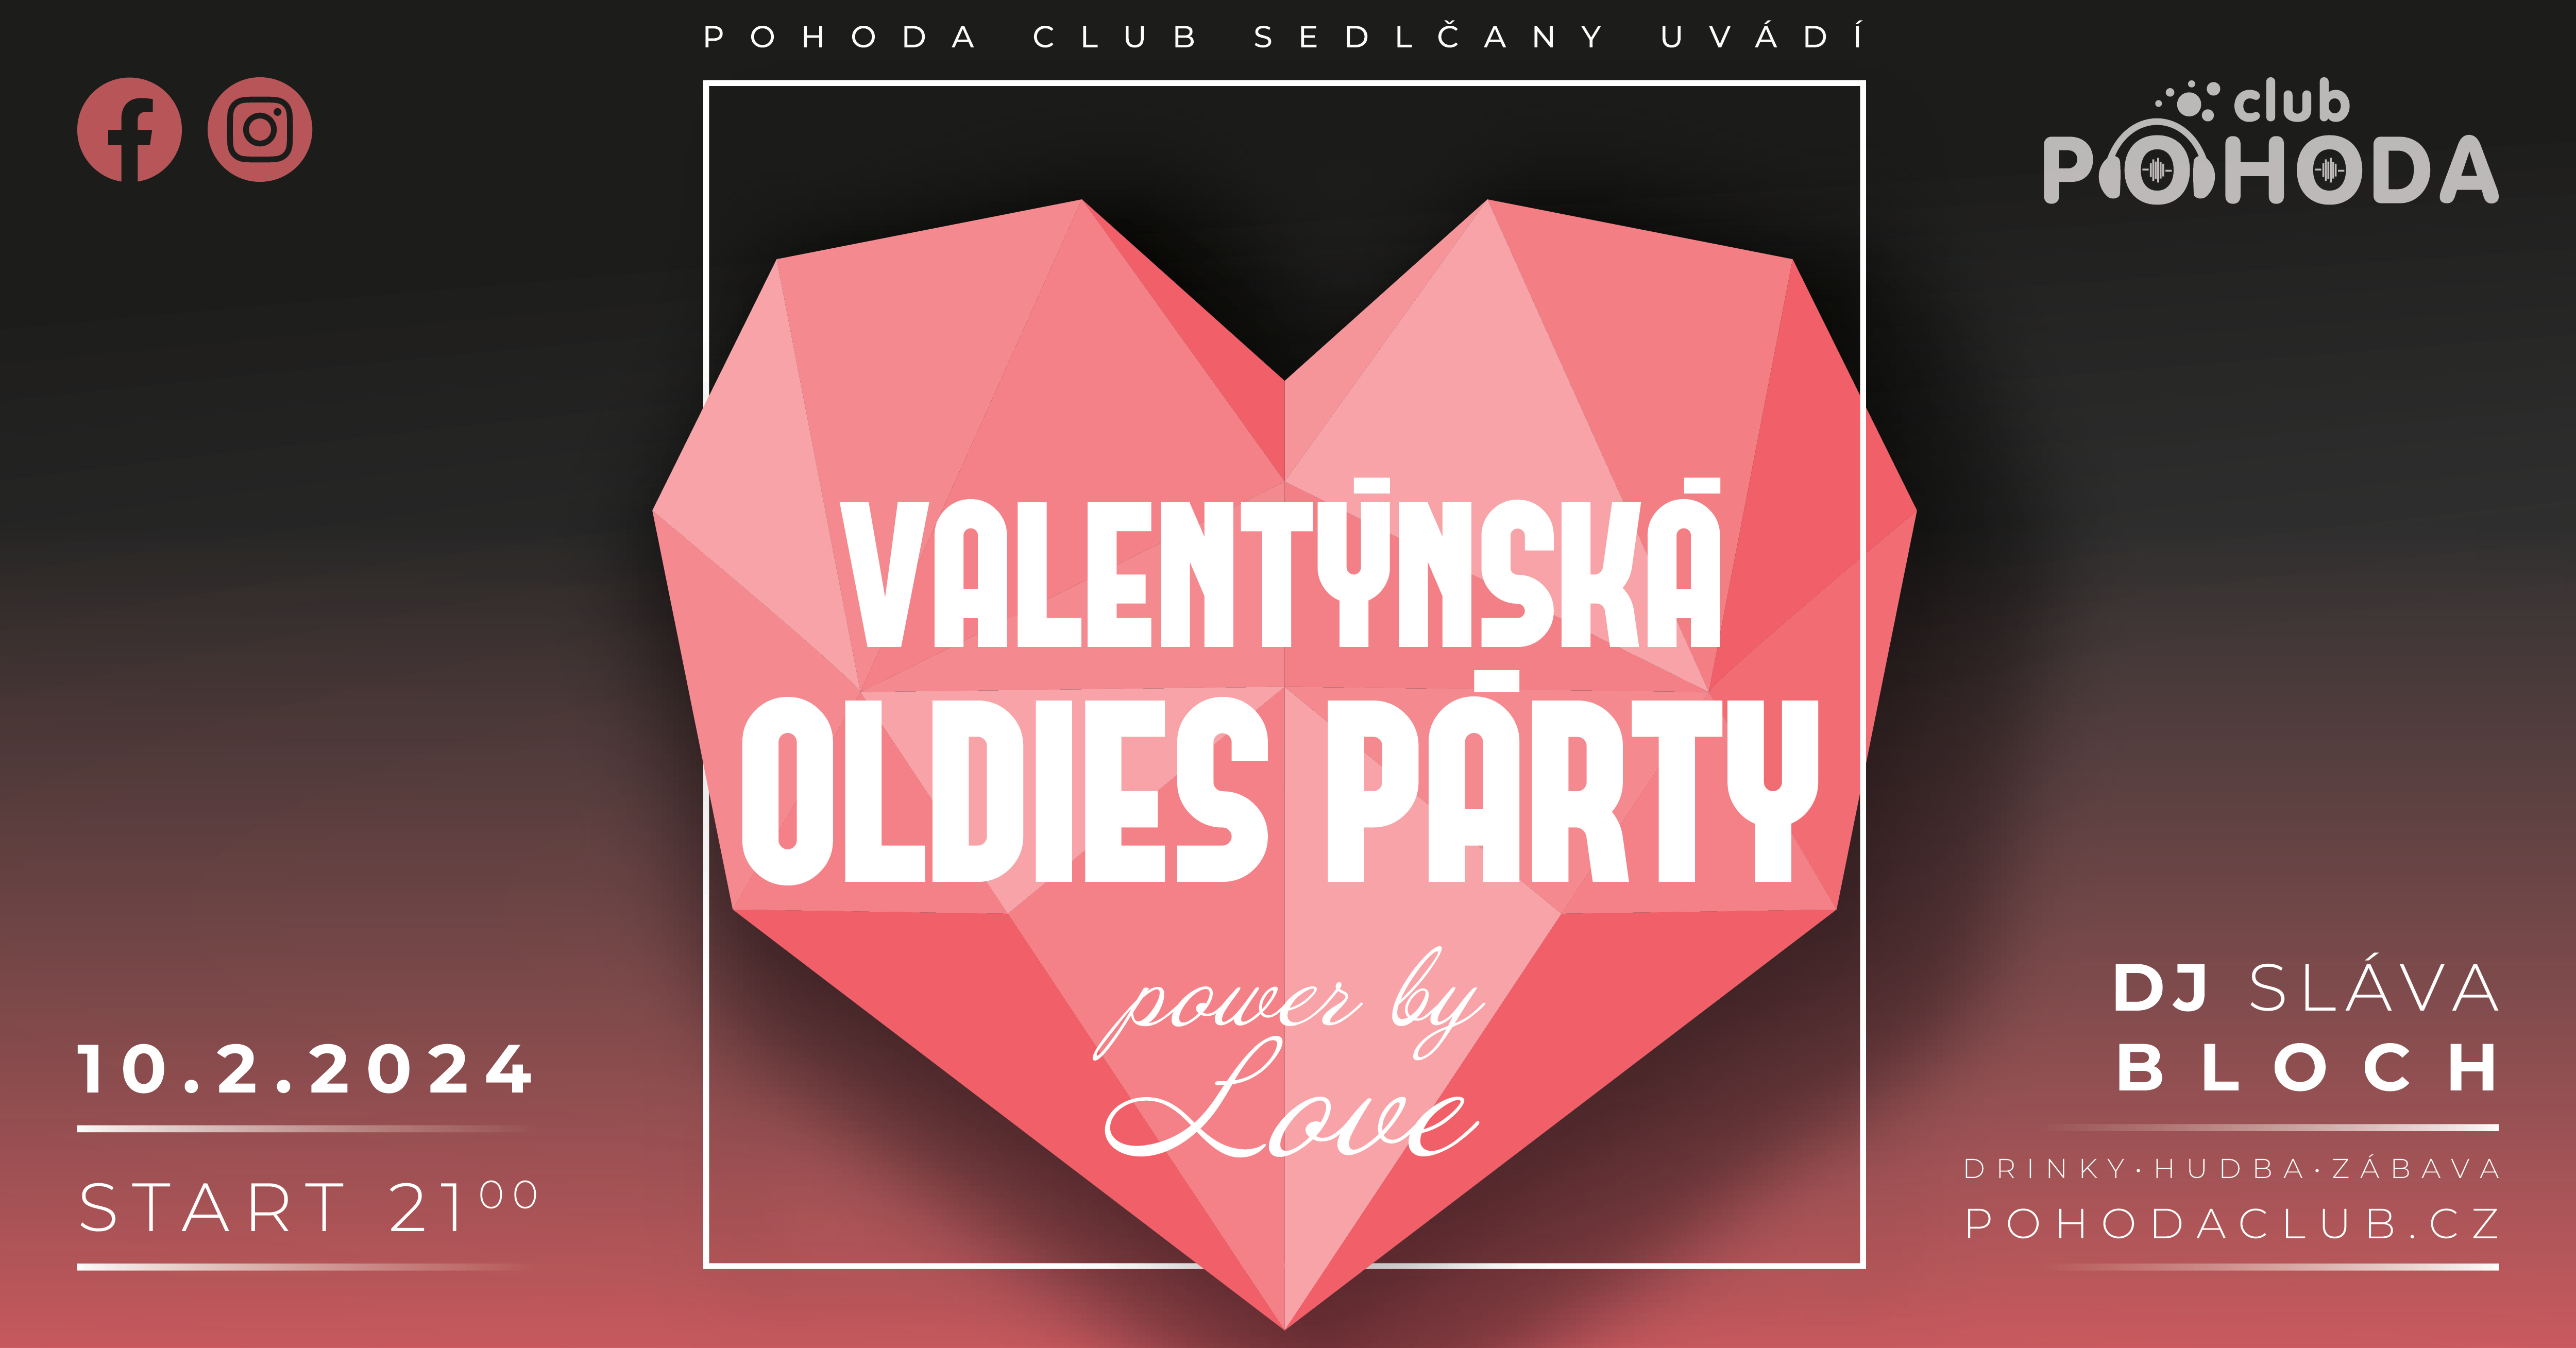 Pohoda_Club_Valentynska_party_2024_banner_FB